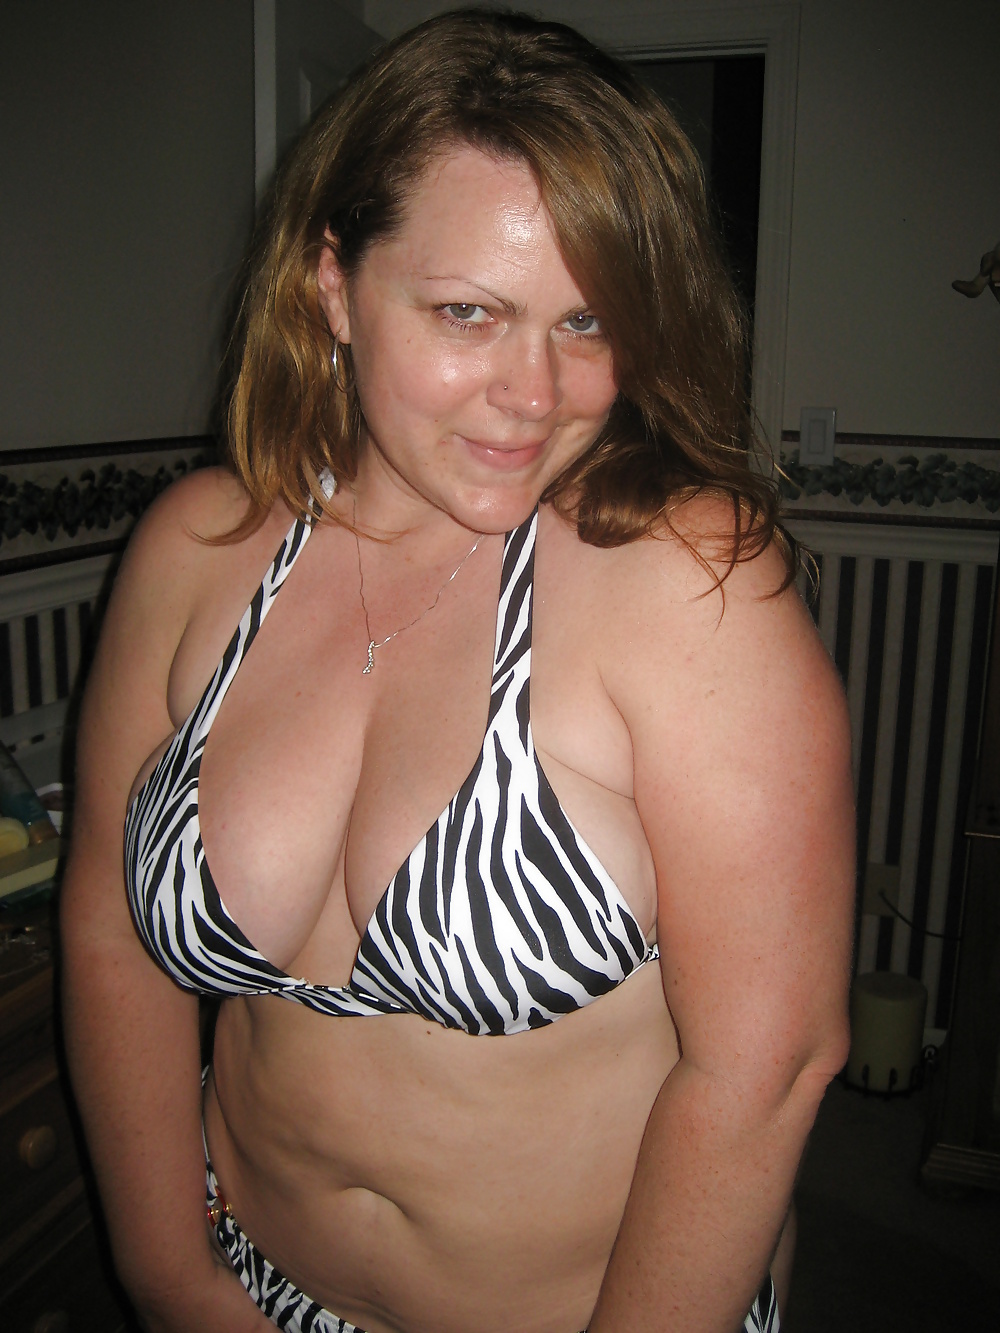 Sex Fat Mrs. Whore in her Victoria's Secret bikini image